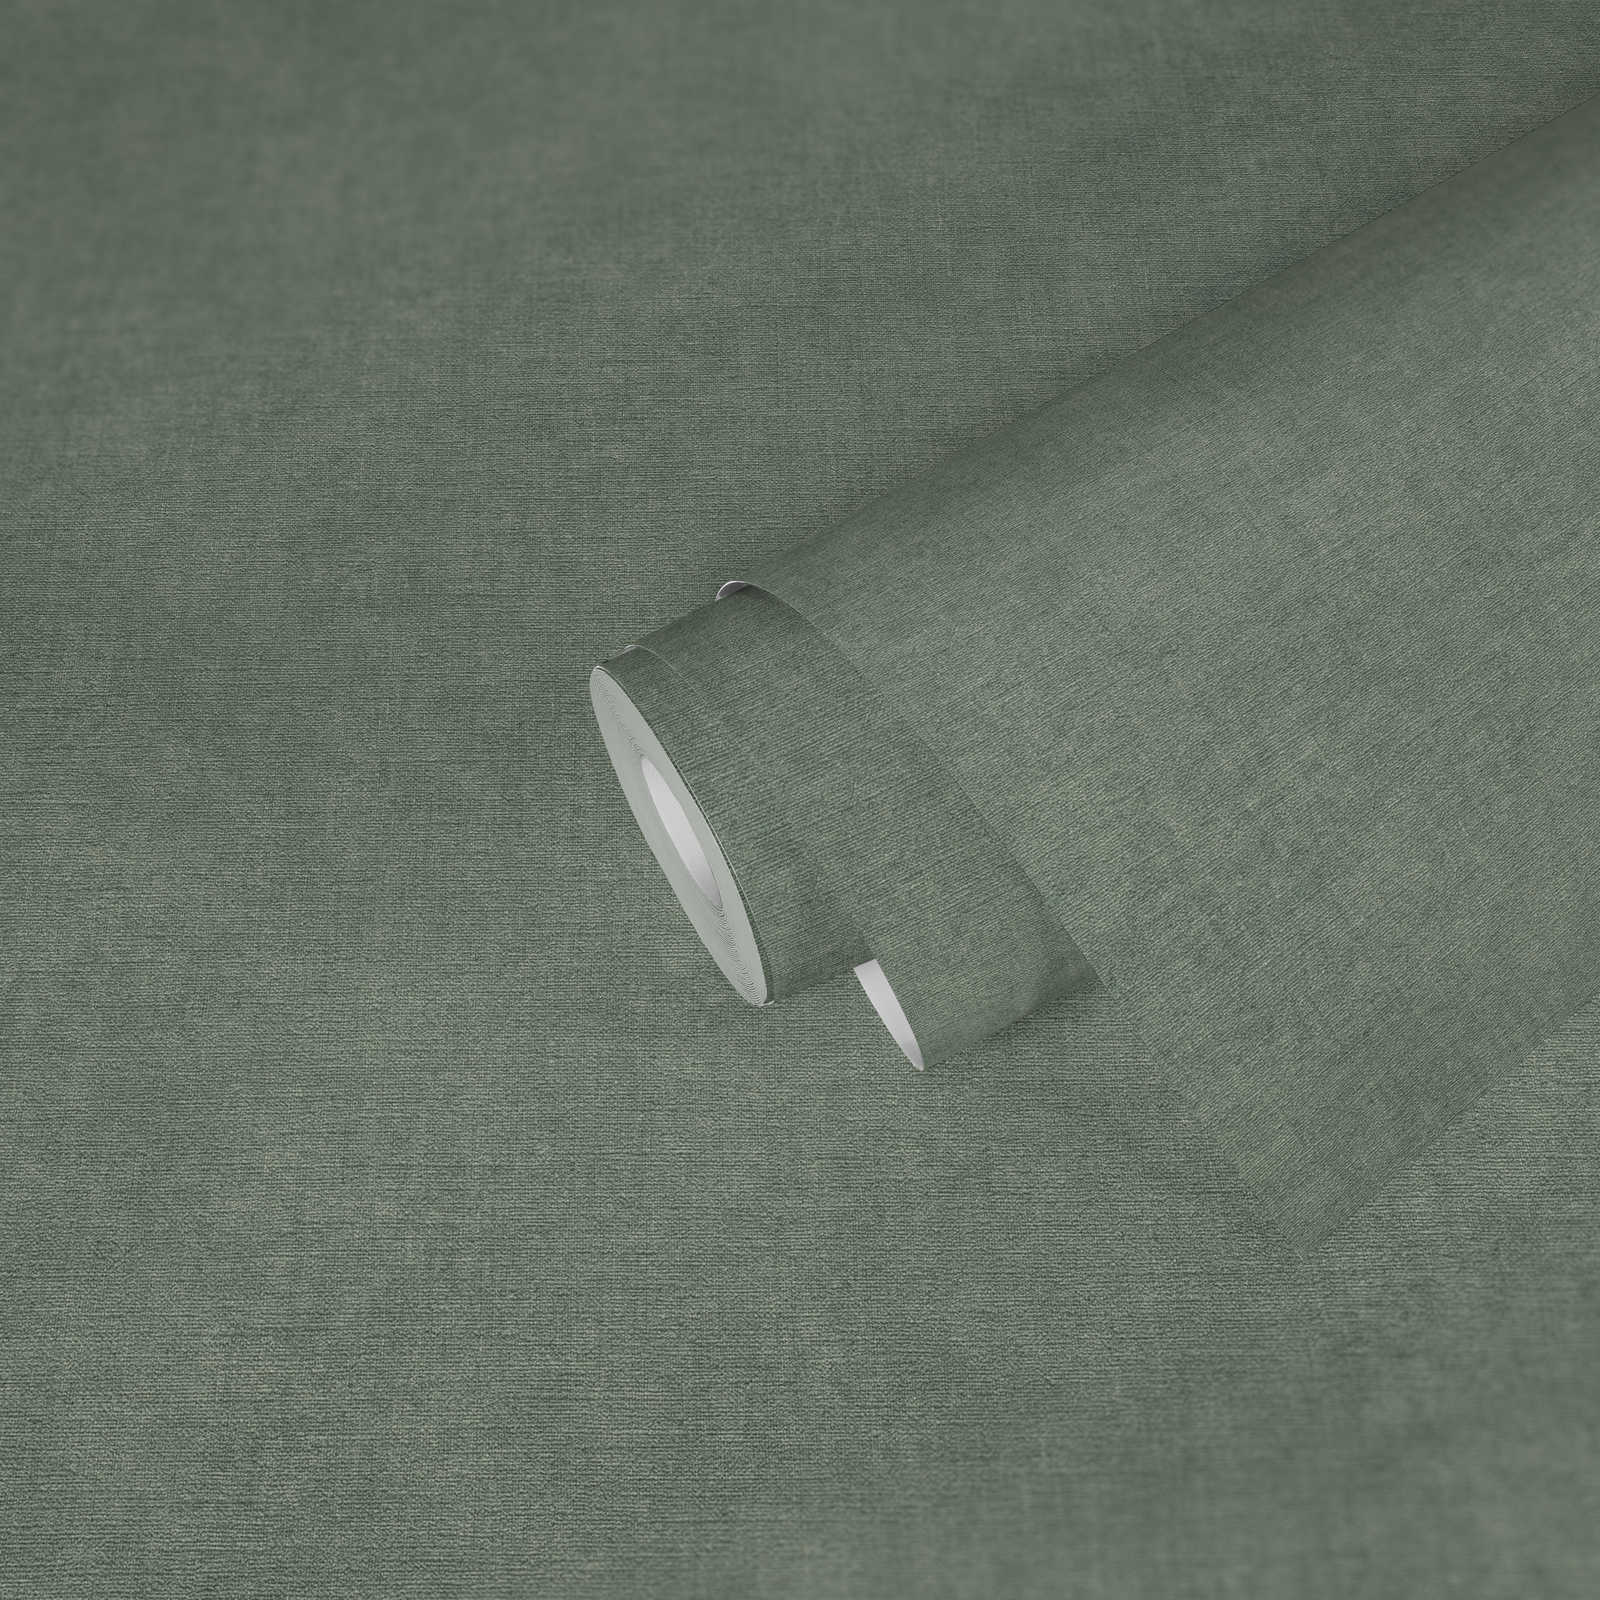             Unitapete leicht strukturiert in Textiloptik – Grün, Grau
        